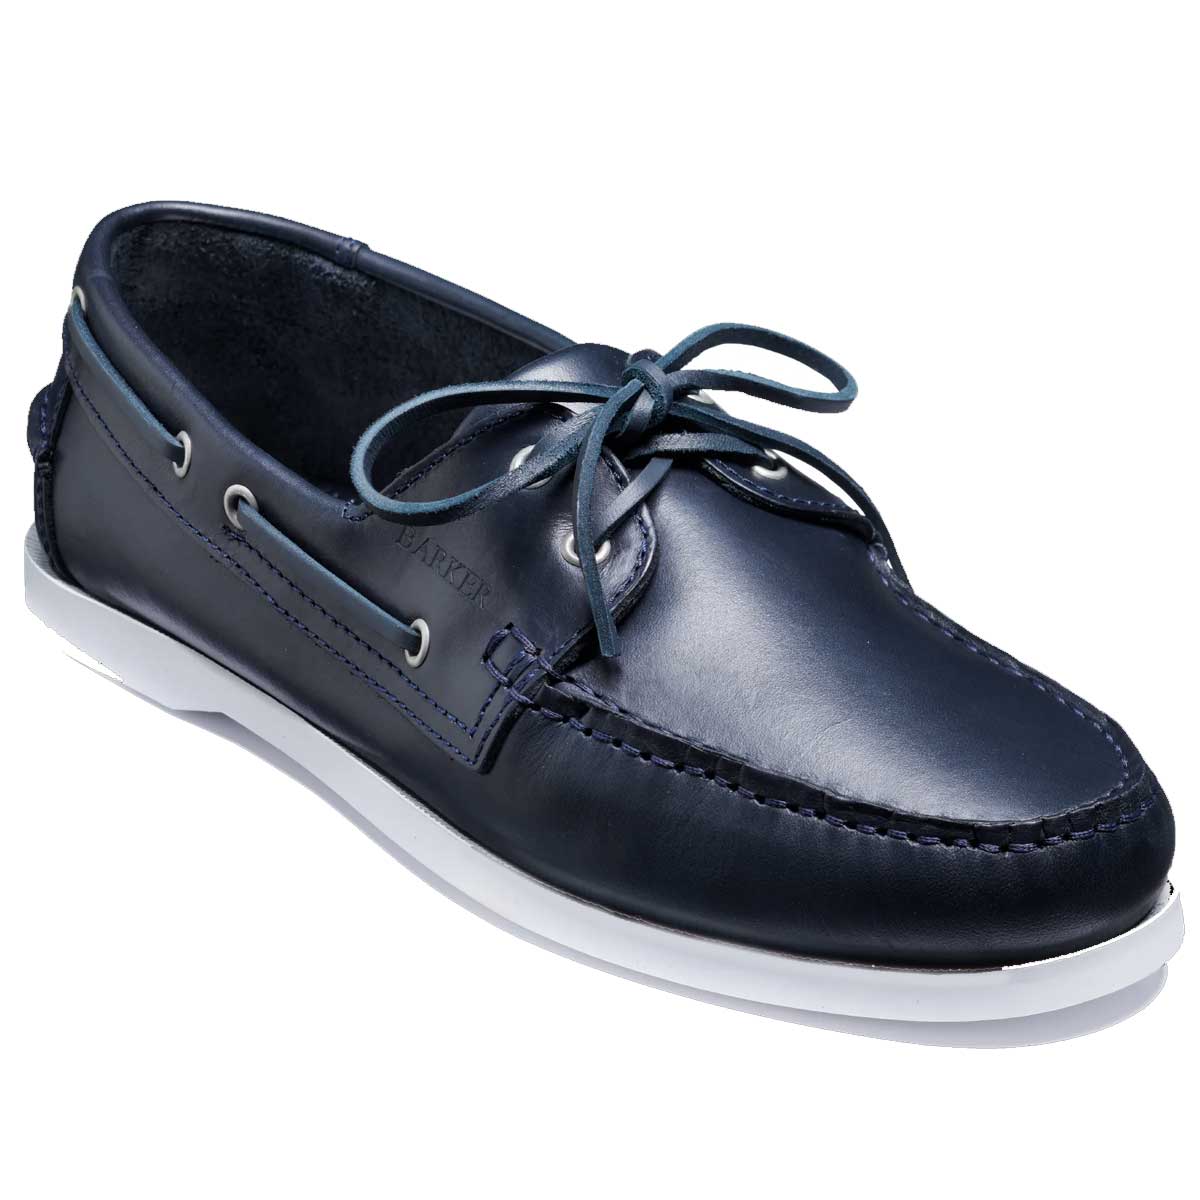 BARKER Keel Deck Shoes - Mens - Navy